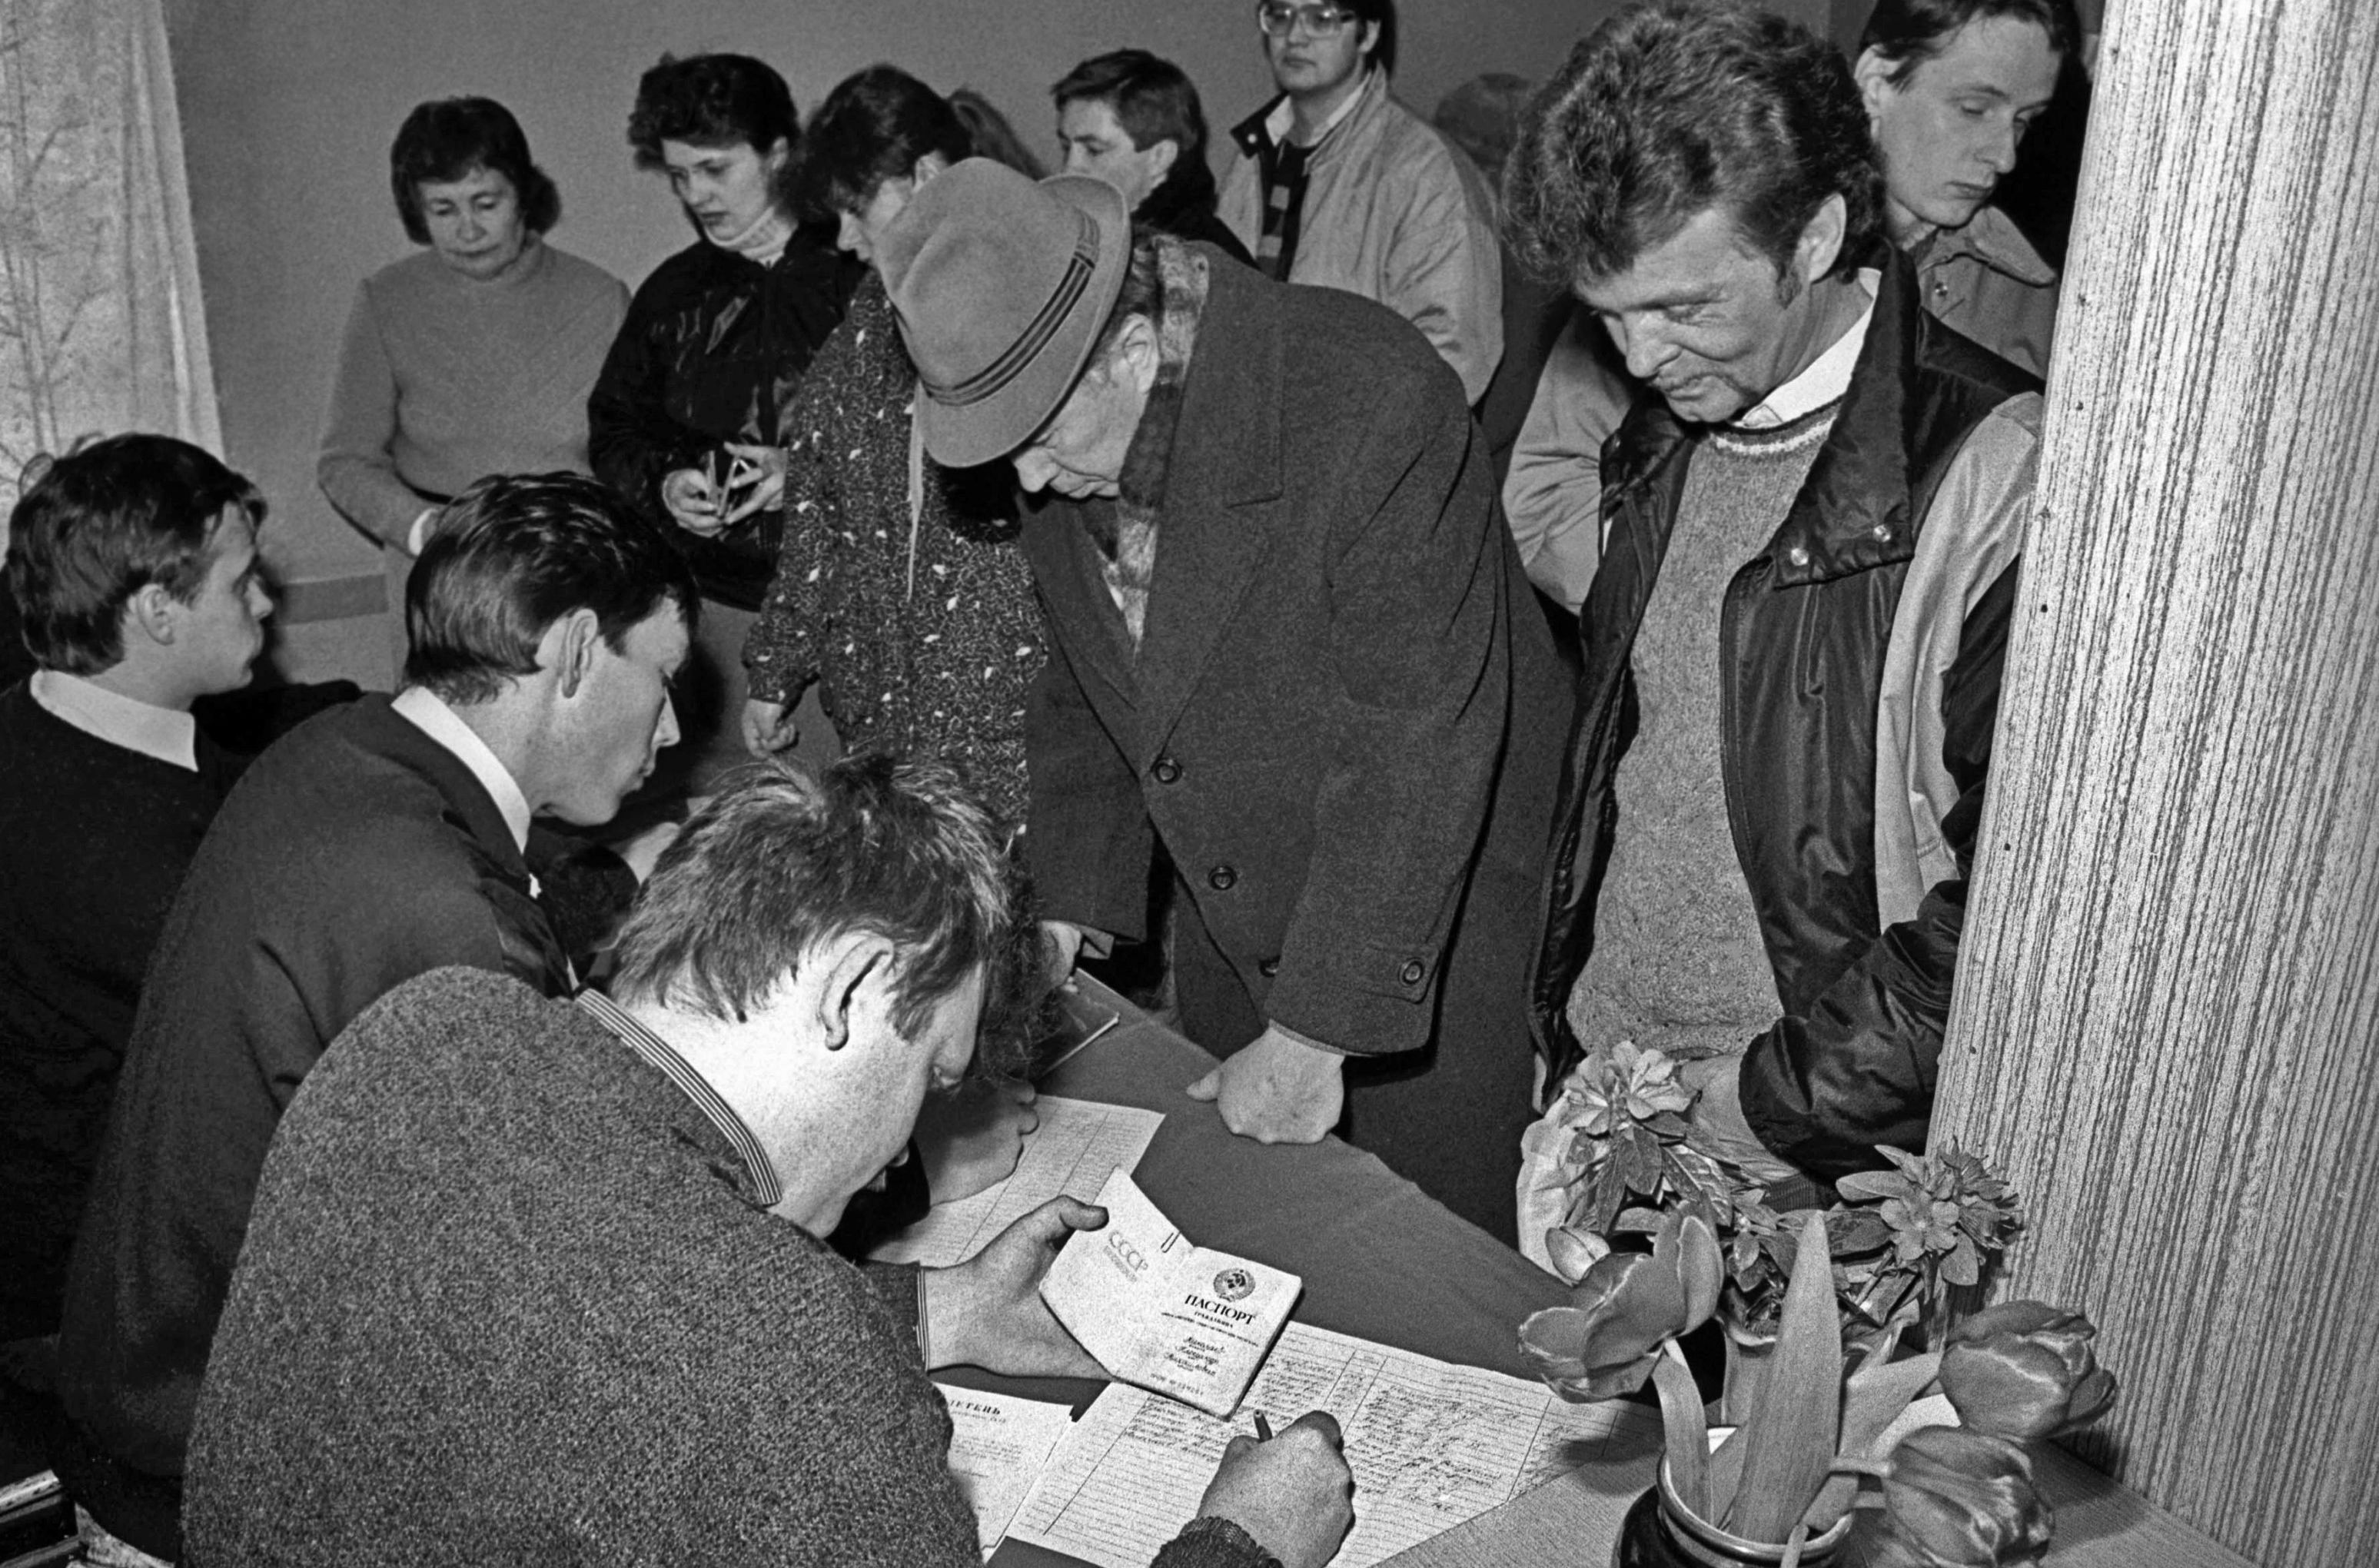 17 марта 1991 года был проведён Всесоюзный референдум по вопросу сохранения Союза Советских Социалистических Республик. Жители литовского города Новый Вильно пришли на избирательный участок в этот день.